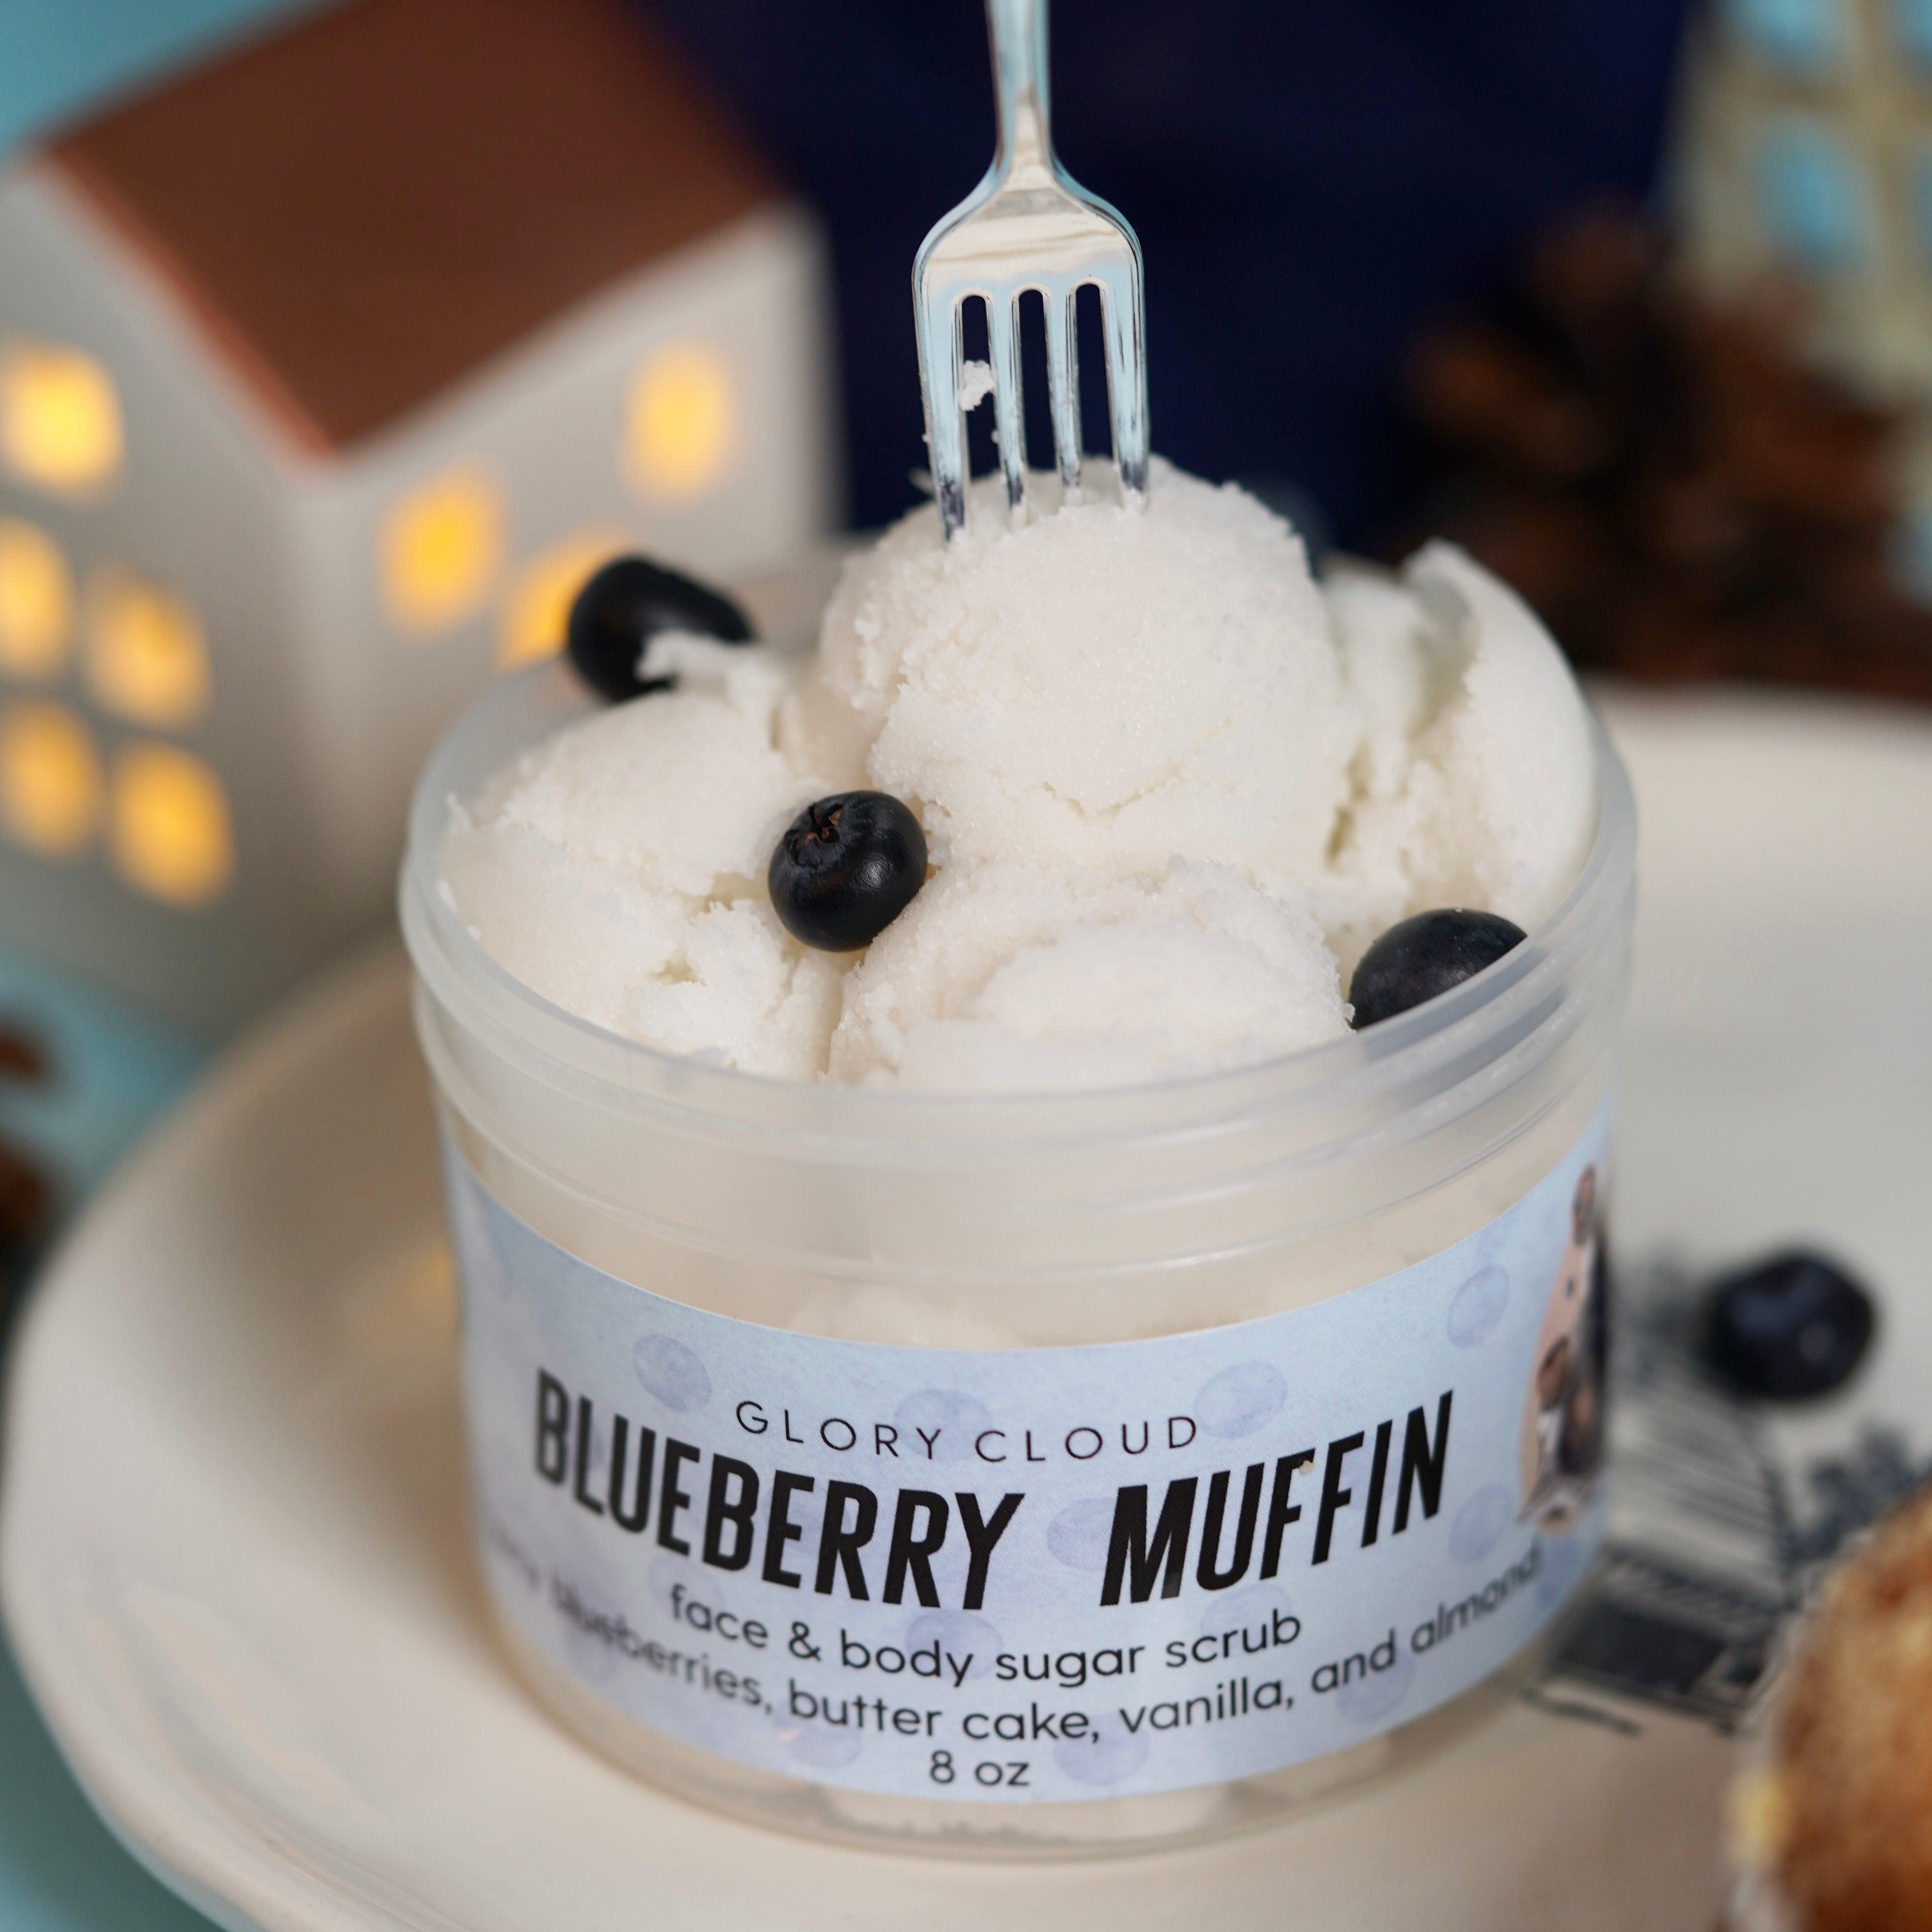 Blueberry Muffin - Cloud Scrub